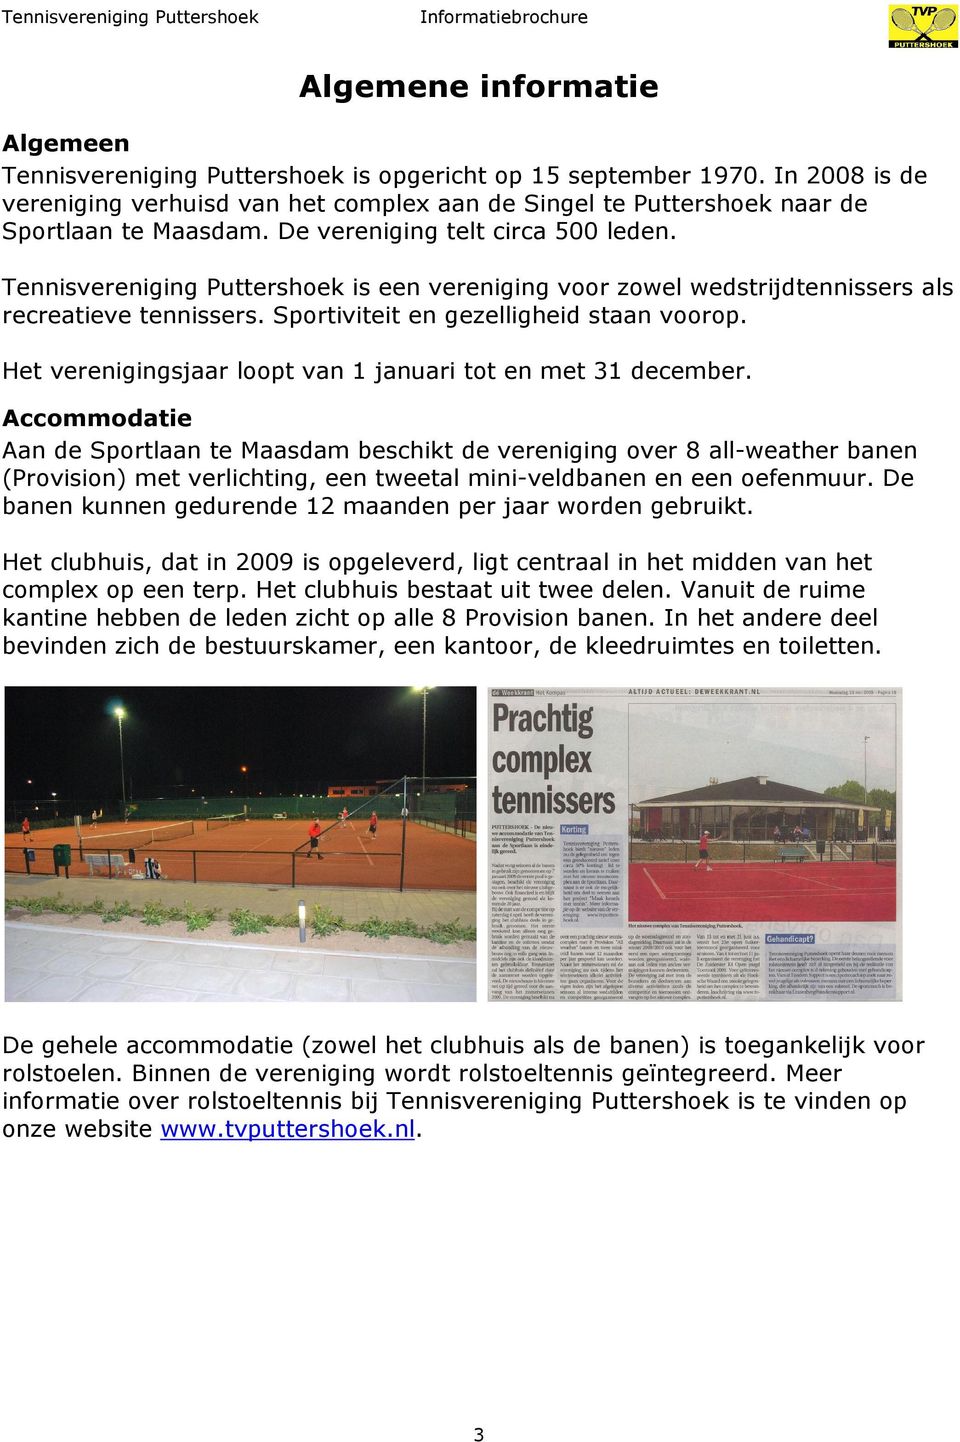 Tennisvereniging Puttershoek is een vereniging voor zowel wedstrijdtennissers als recreatieve tennissers. Sportiviteit en gezelligheid staan voorop.